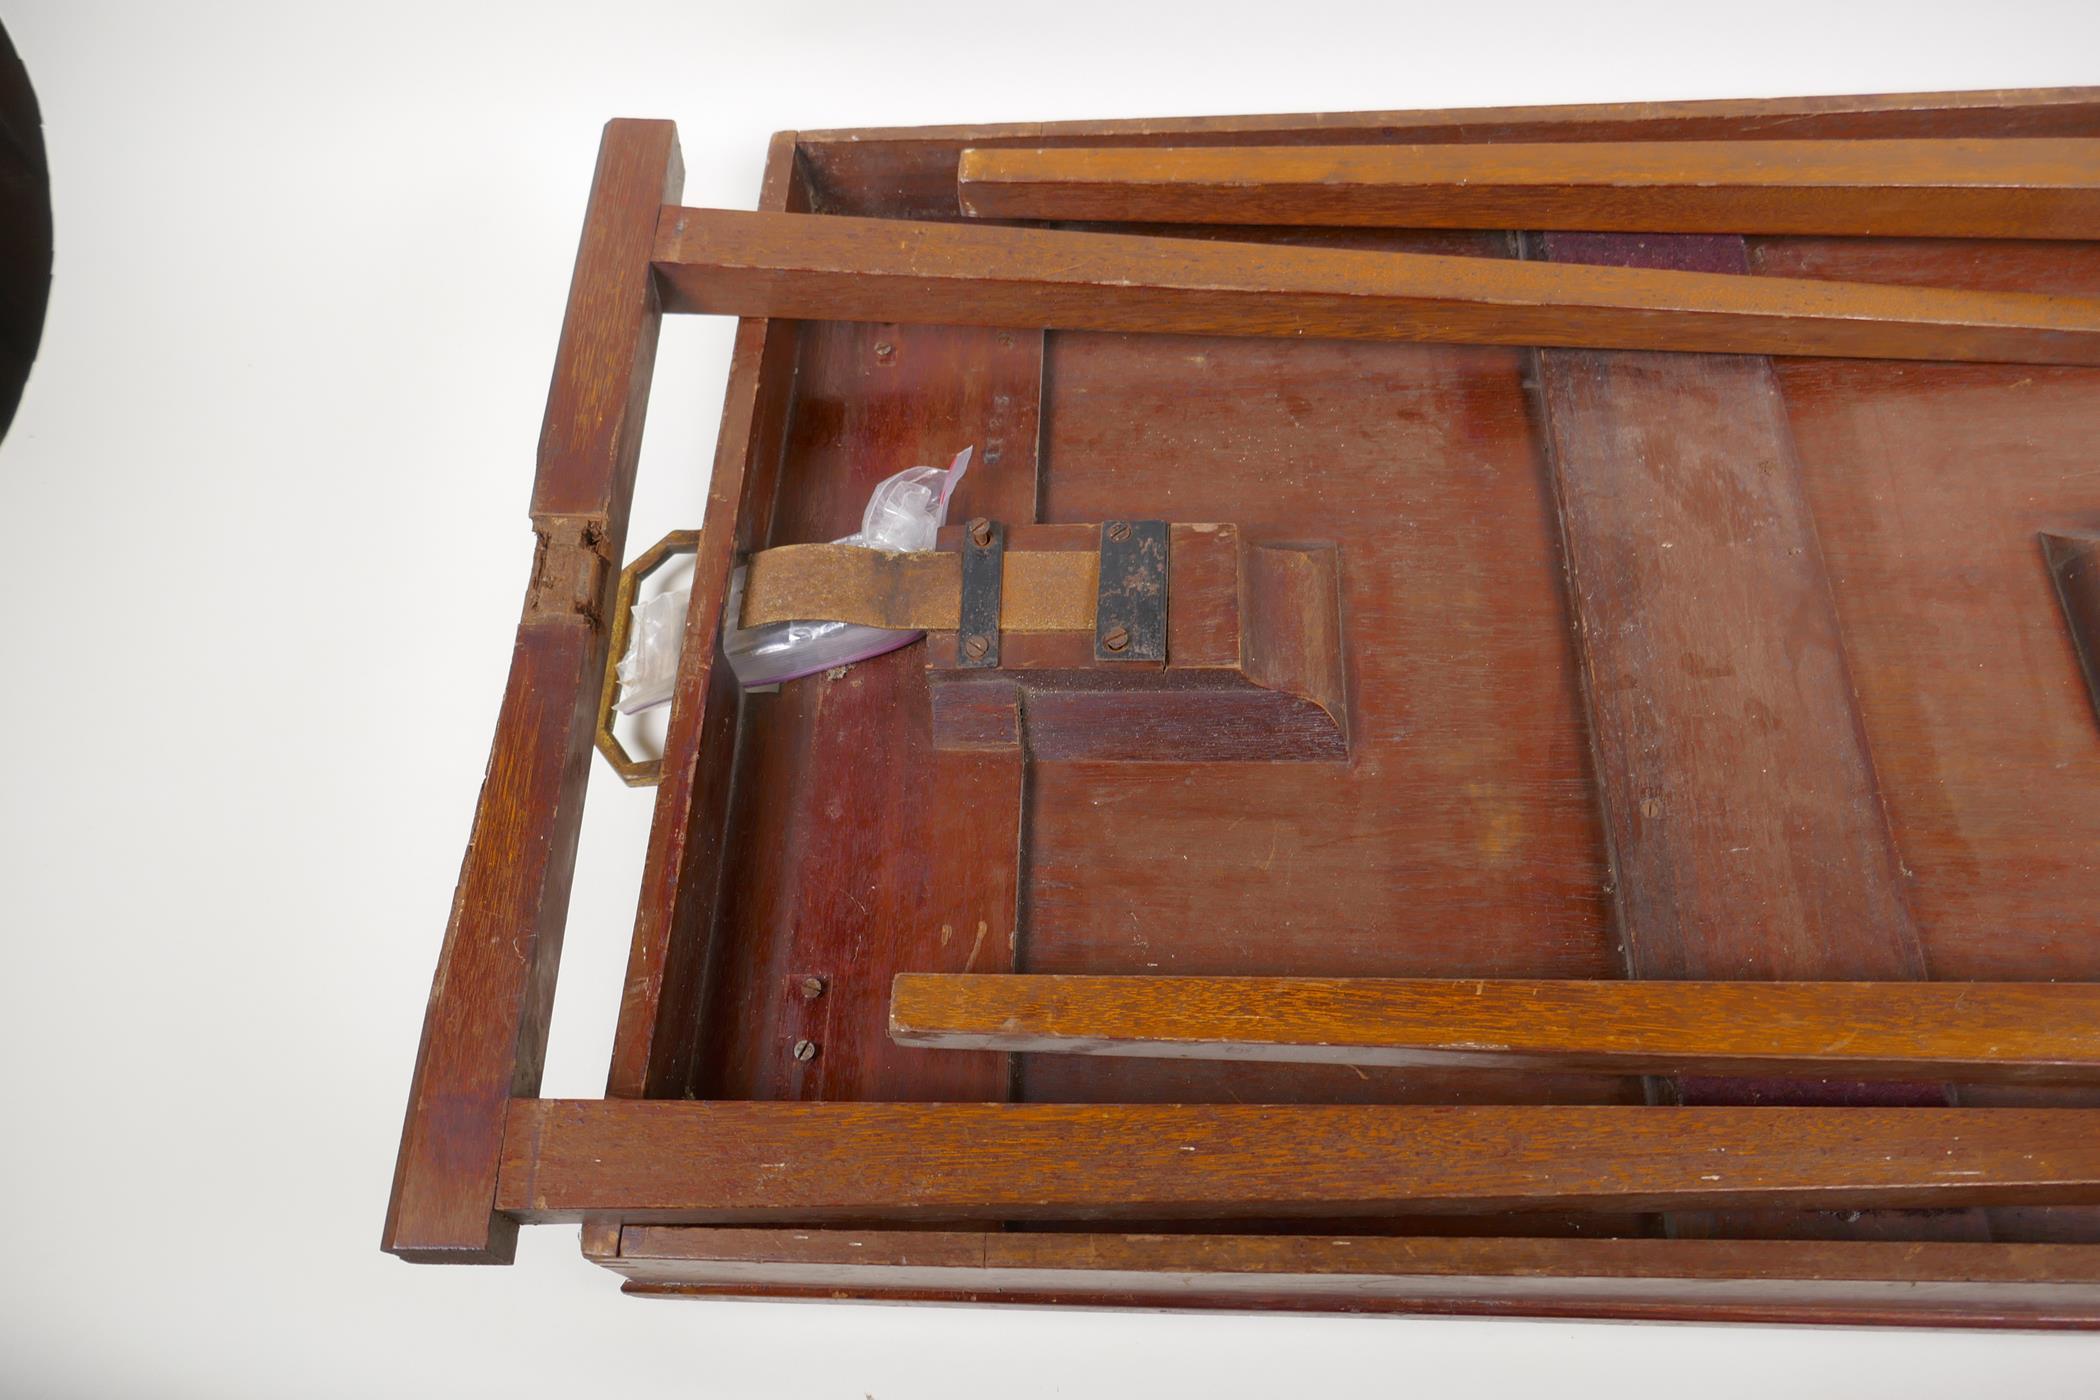 An Asprey mahogany 'Osterley' folding table tray, 27" x 17" - Image 3 of 5